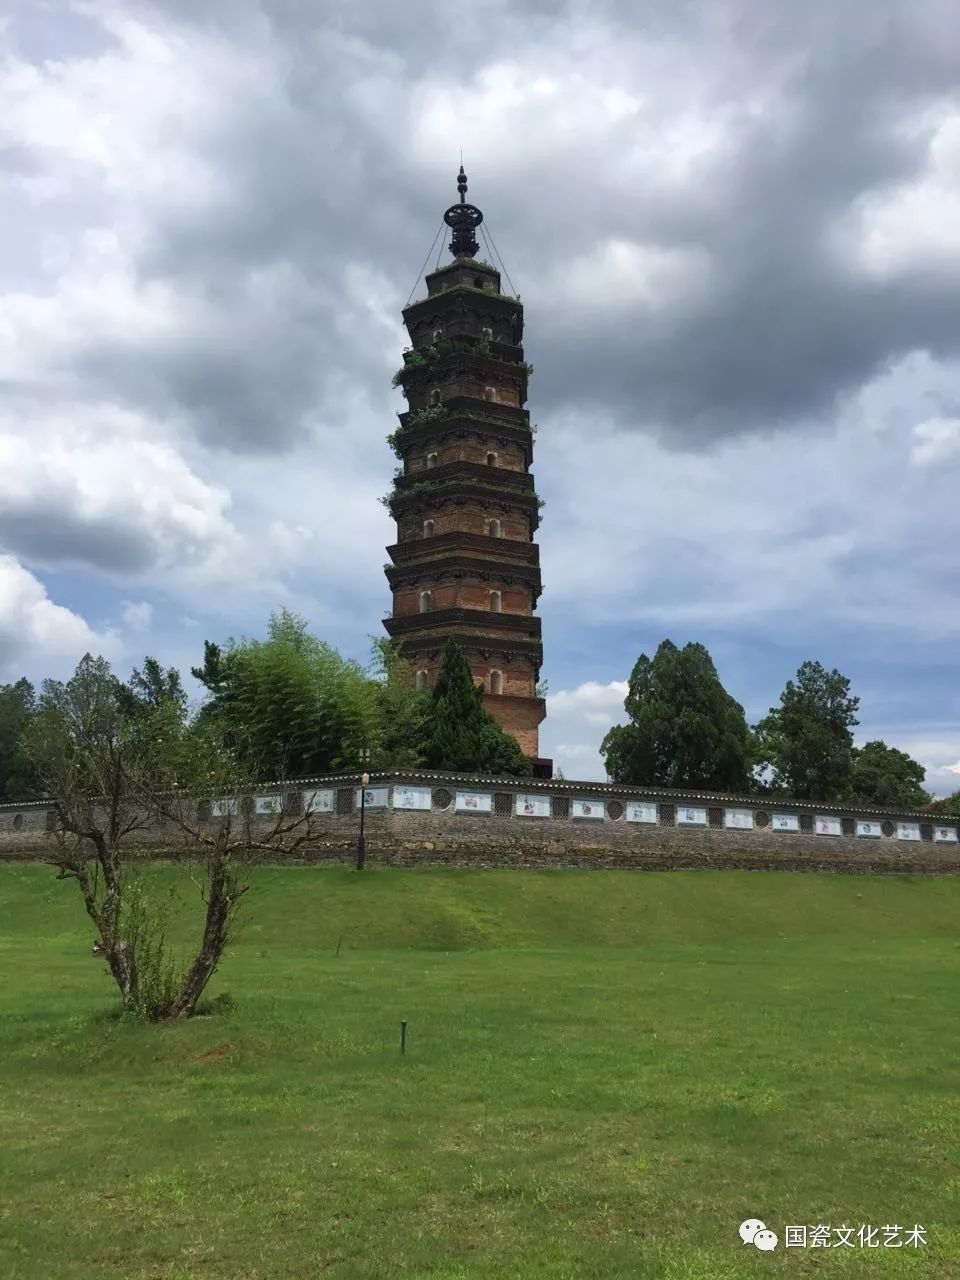 矗立在景德镇浮梁县旧城的红塔,始称西塔,是古代浮梁县的标志性建筑